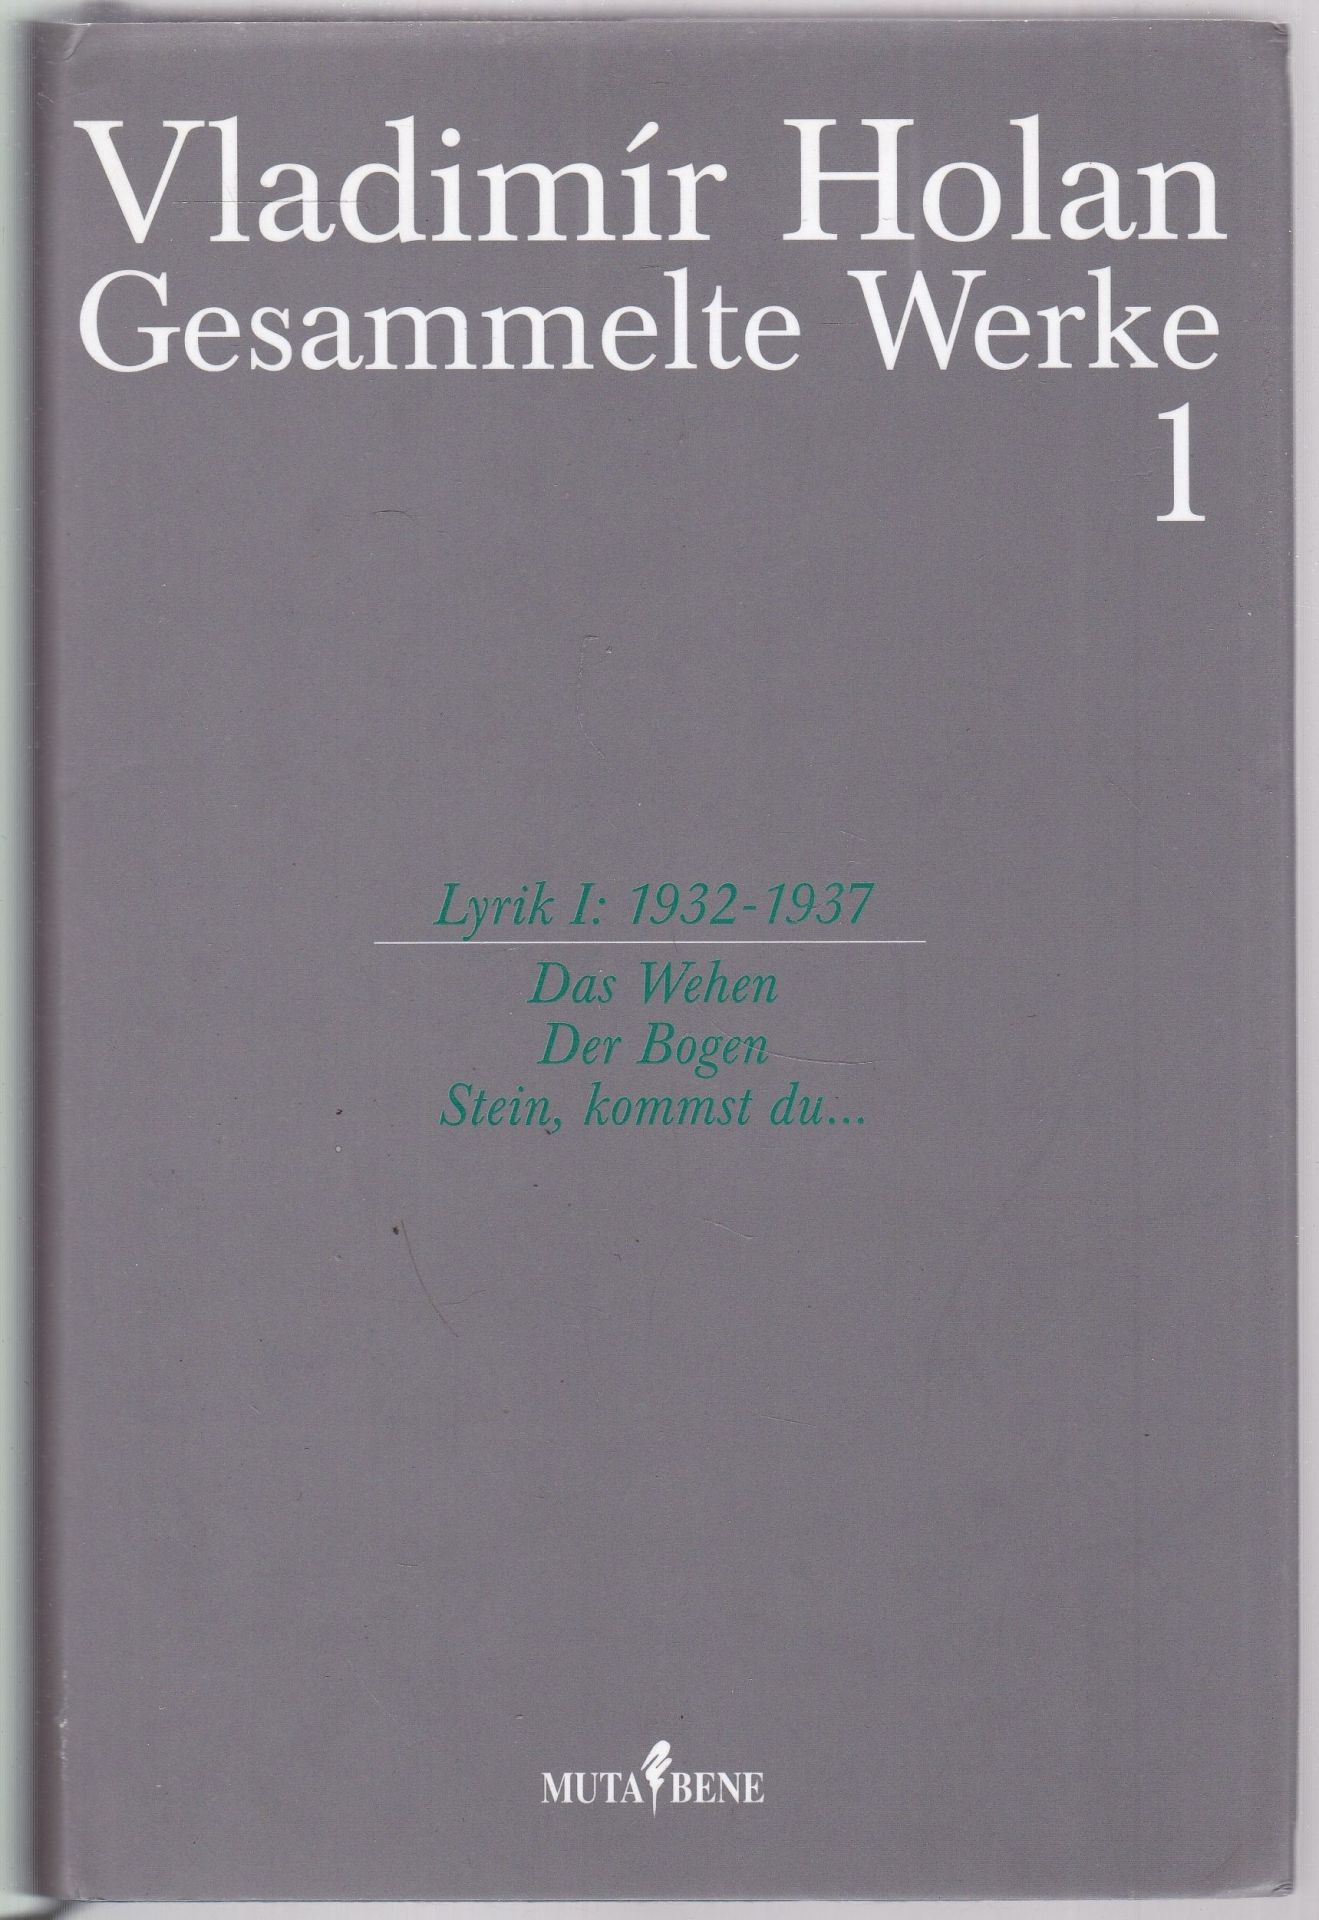 Das Wehen. Der Bogen. Stein, kommst du... (Gesammelte Werke, 1: Lyrik I: 1932-1937)